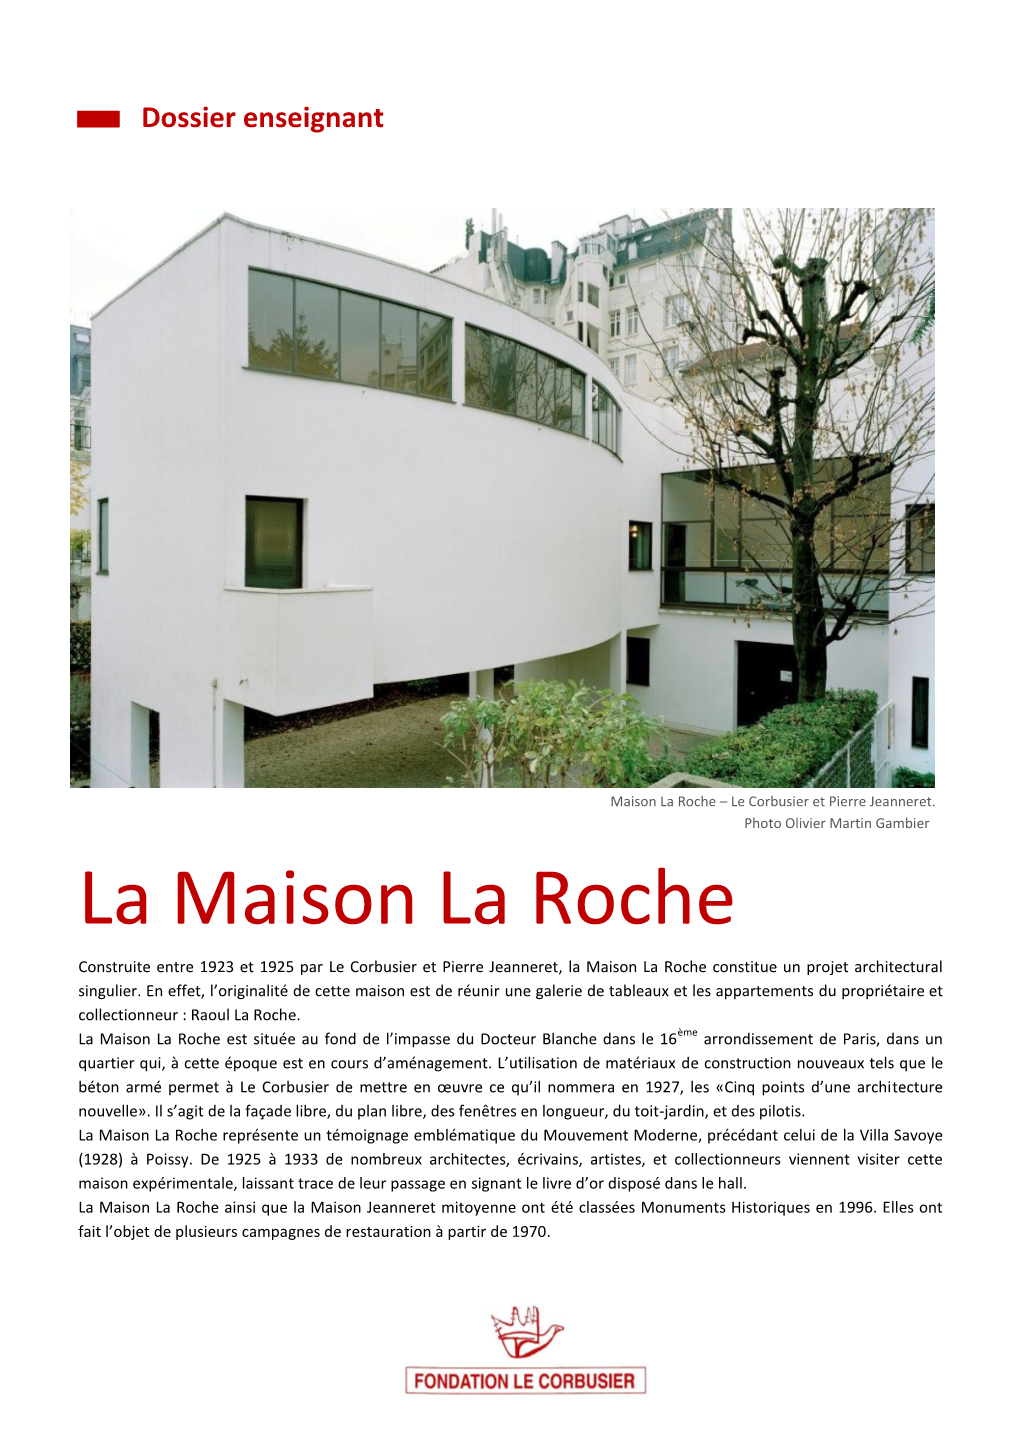 La Maison La Roche Construite Entre 1923 Et 1925 Par Le Corbusier Et Pierre Jeanneret, La Maison La Roche Constitue Un Projet Architectural Singulier